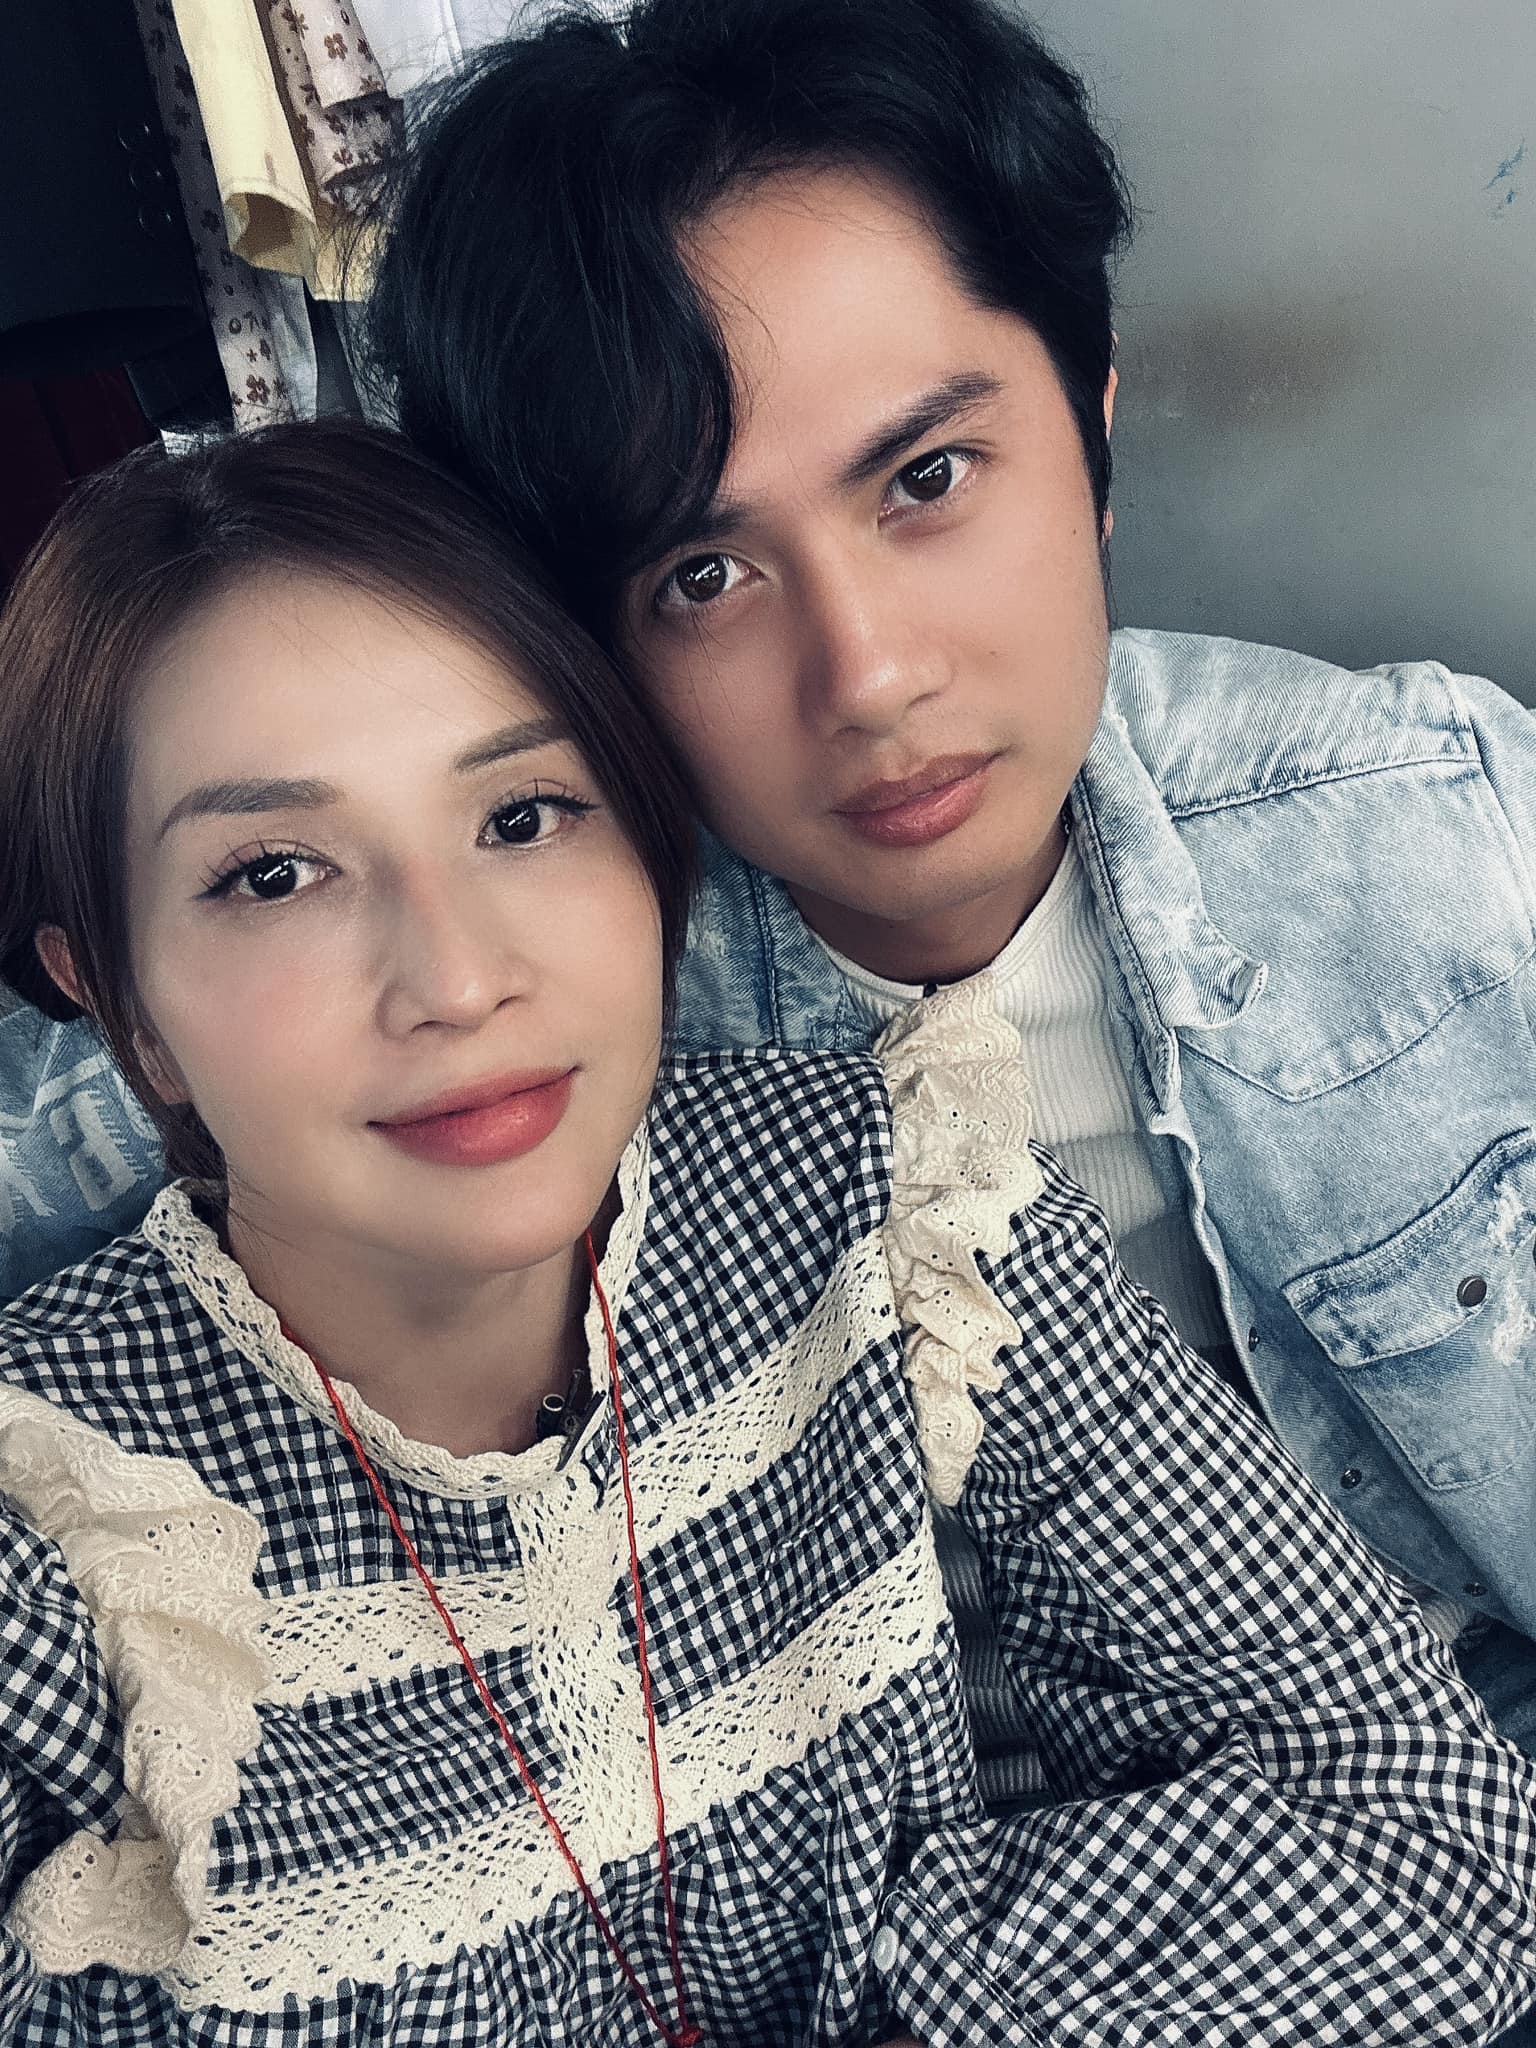 Mối quan hệ của Khả Như và Huỳnh Phương hiện ra sao sau tin đồn đang hẹn hò? - ảnh 4